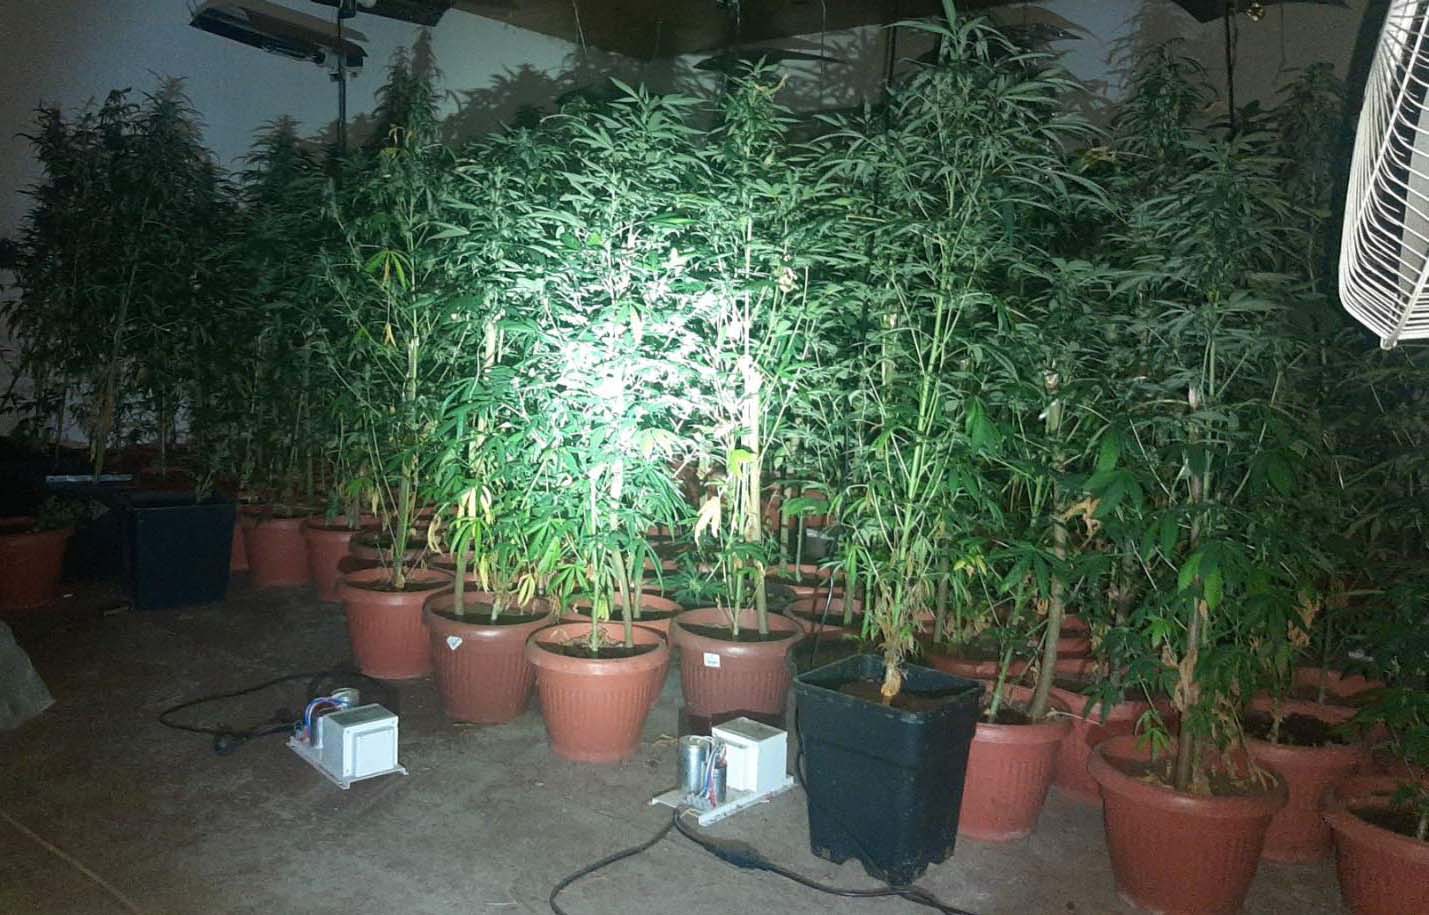 Otkrivena improvizovana laboratorija za veštački uzgoj marihuane